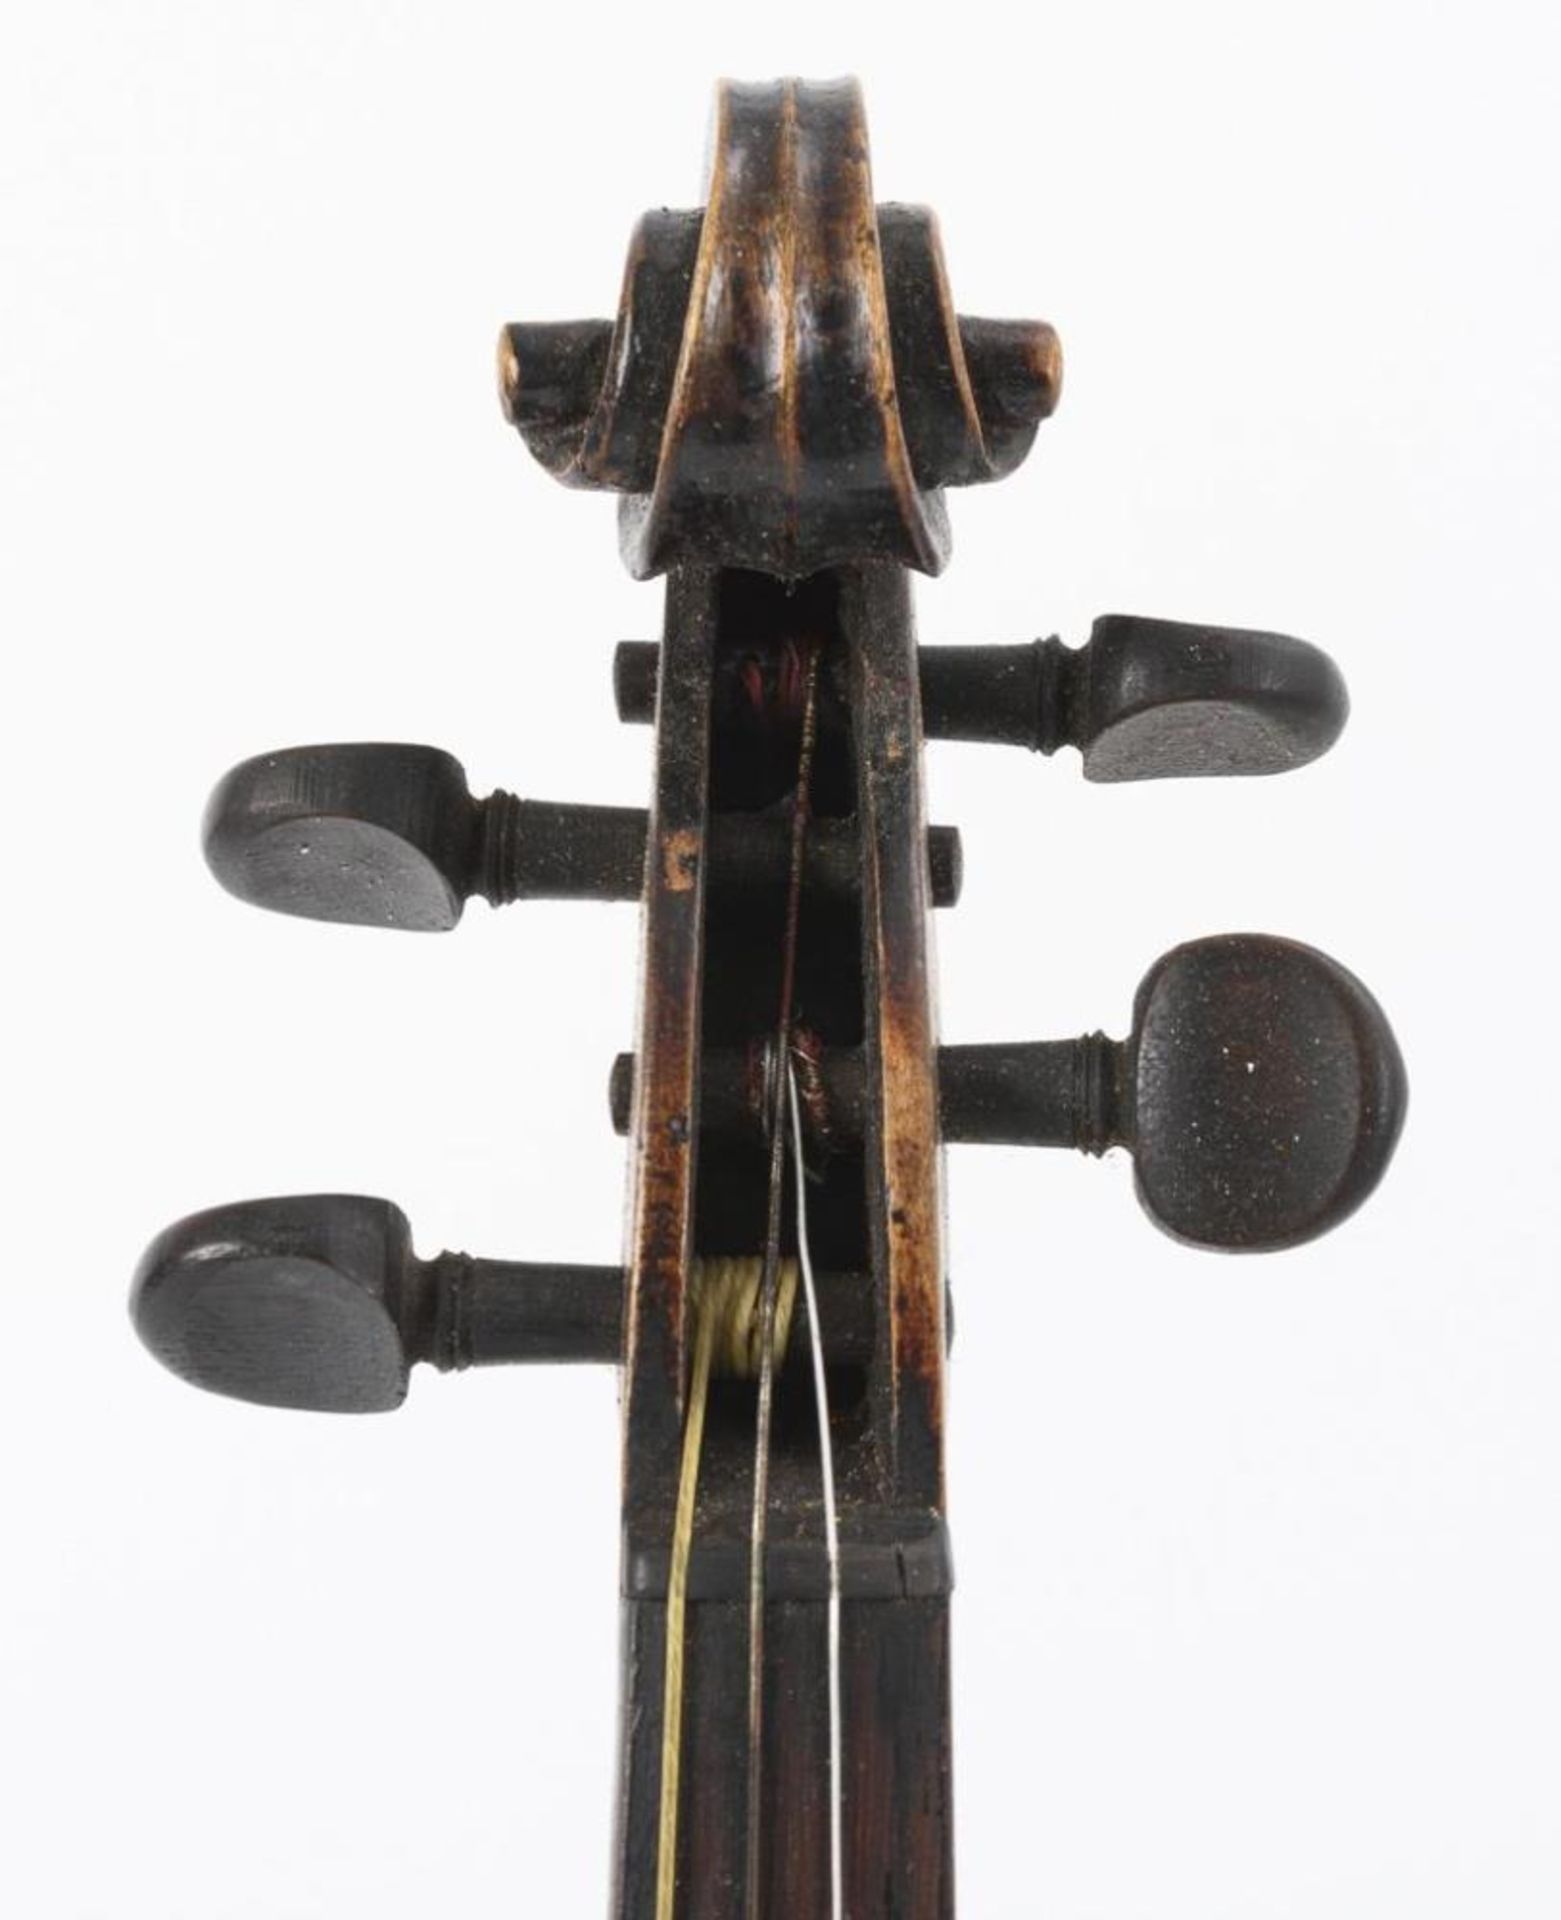 4/4-Violine mit Bogen in Koffer. - Image 5 of 8